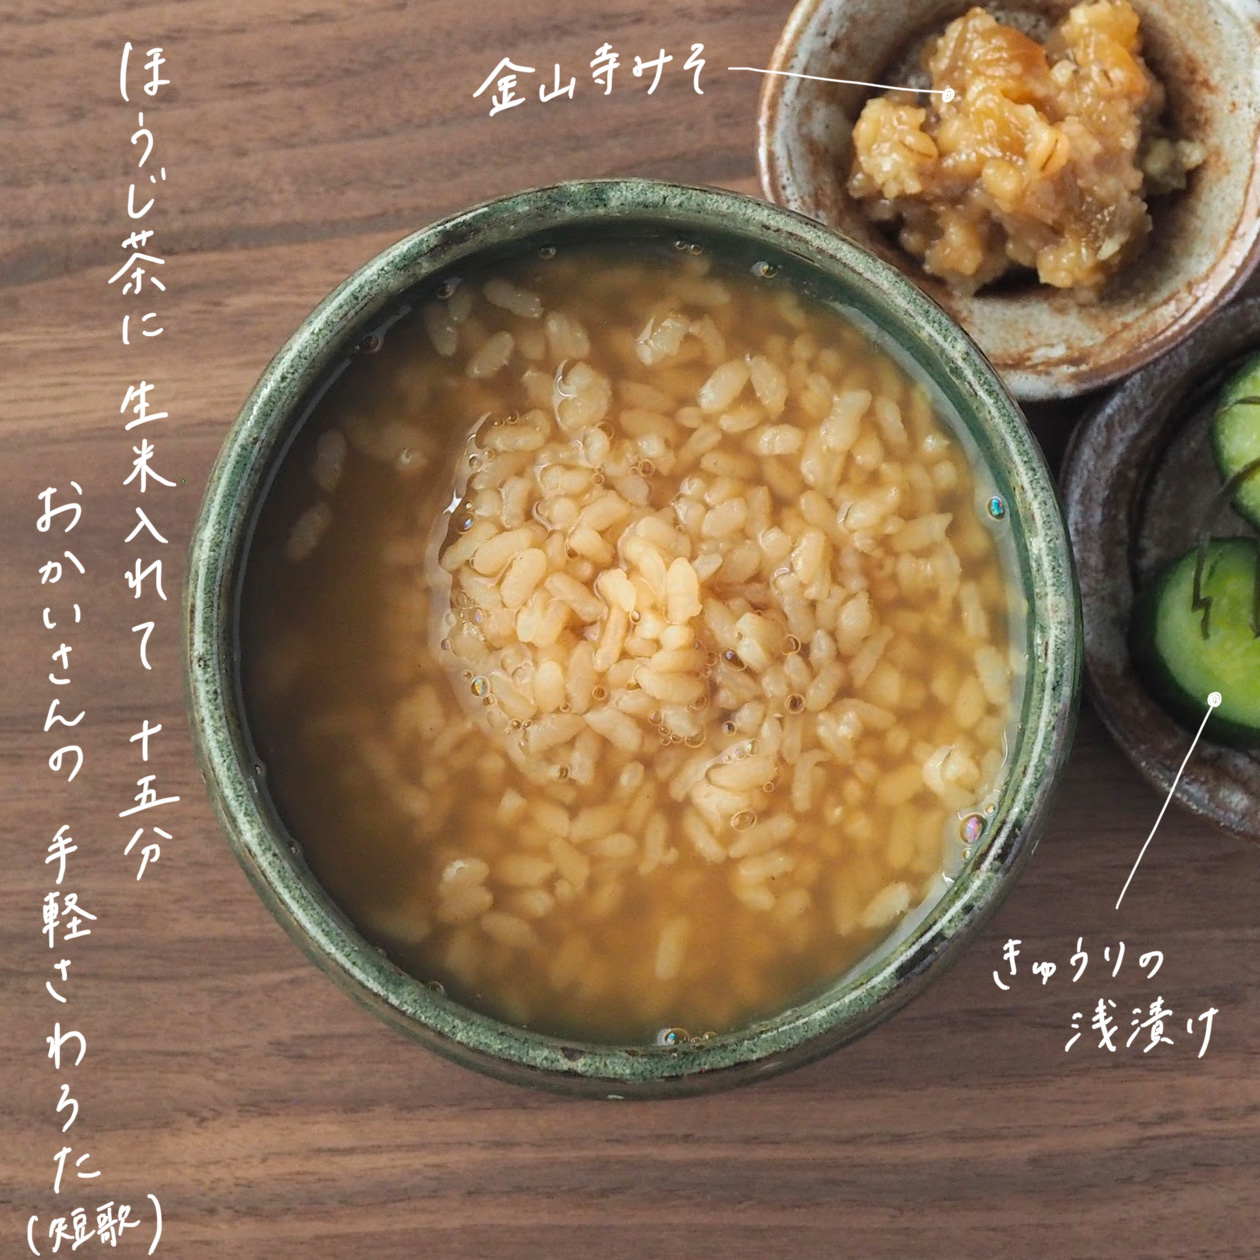 茶粥と金山寺味噌の材料解説写真